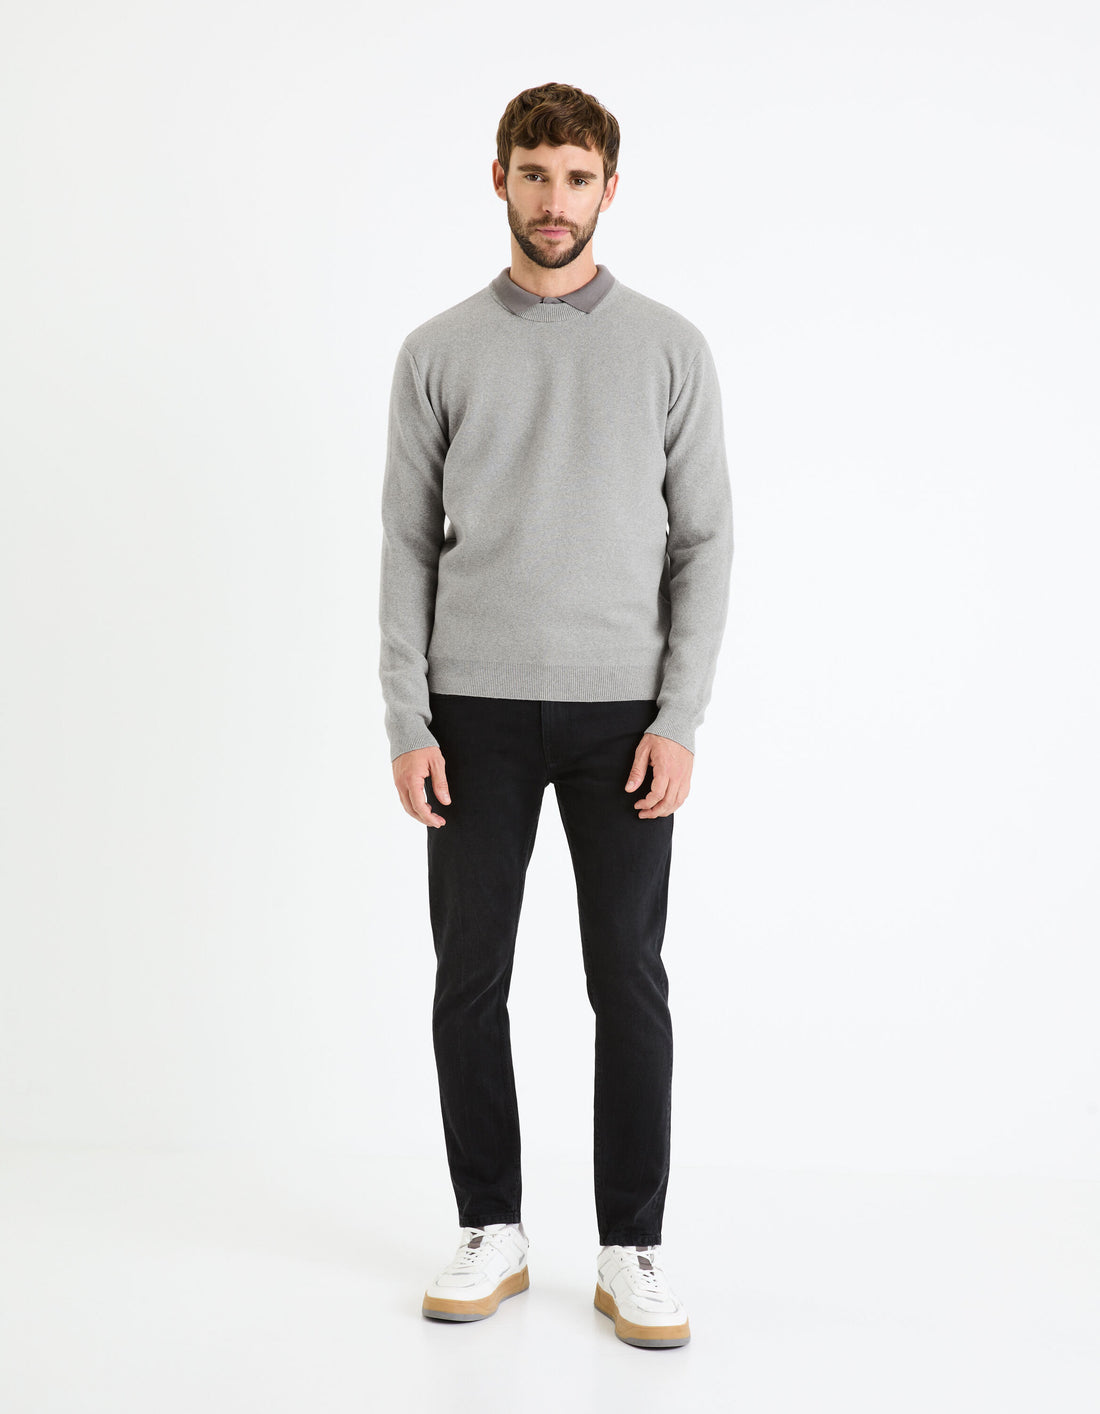 Cotton-Blend Round Neck Sweater - Beige_BECLO_GREY MEL_02